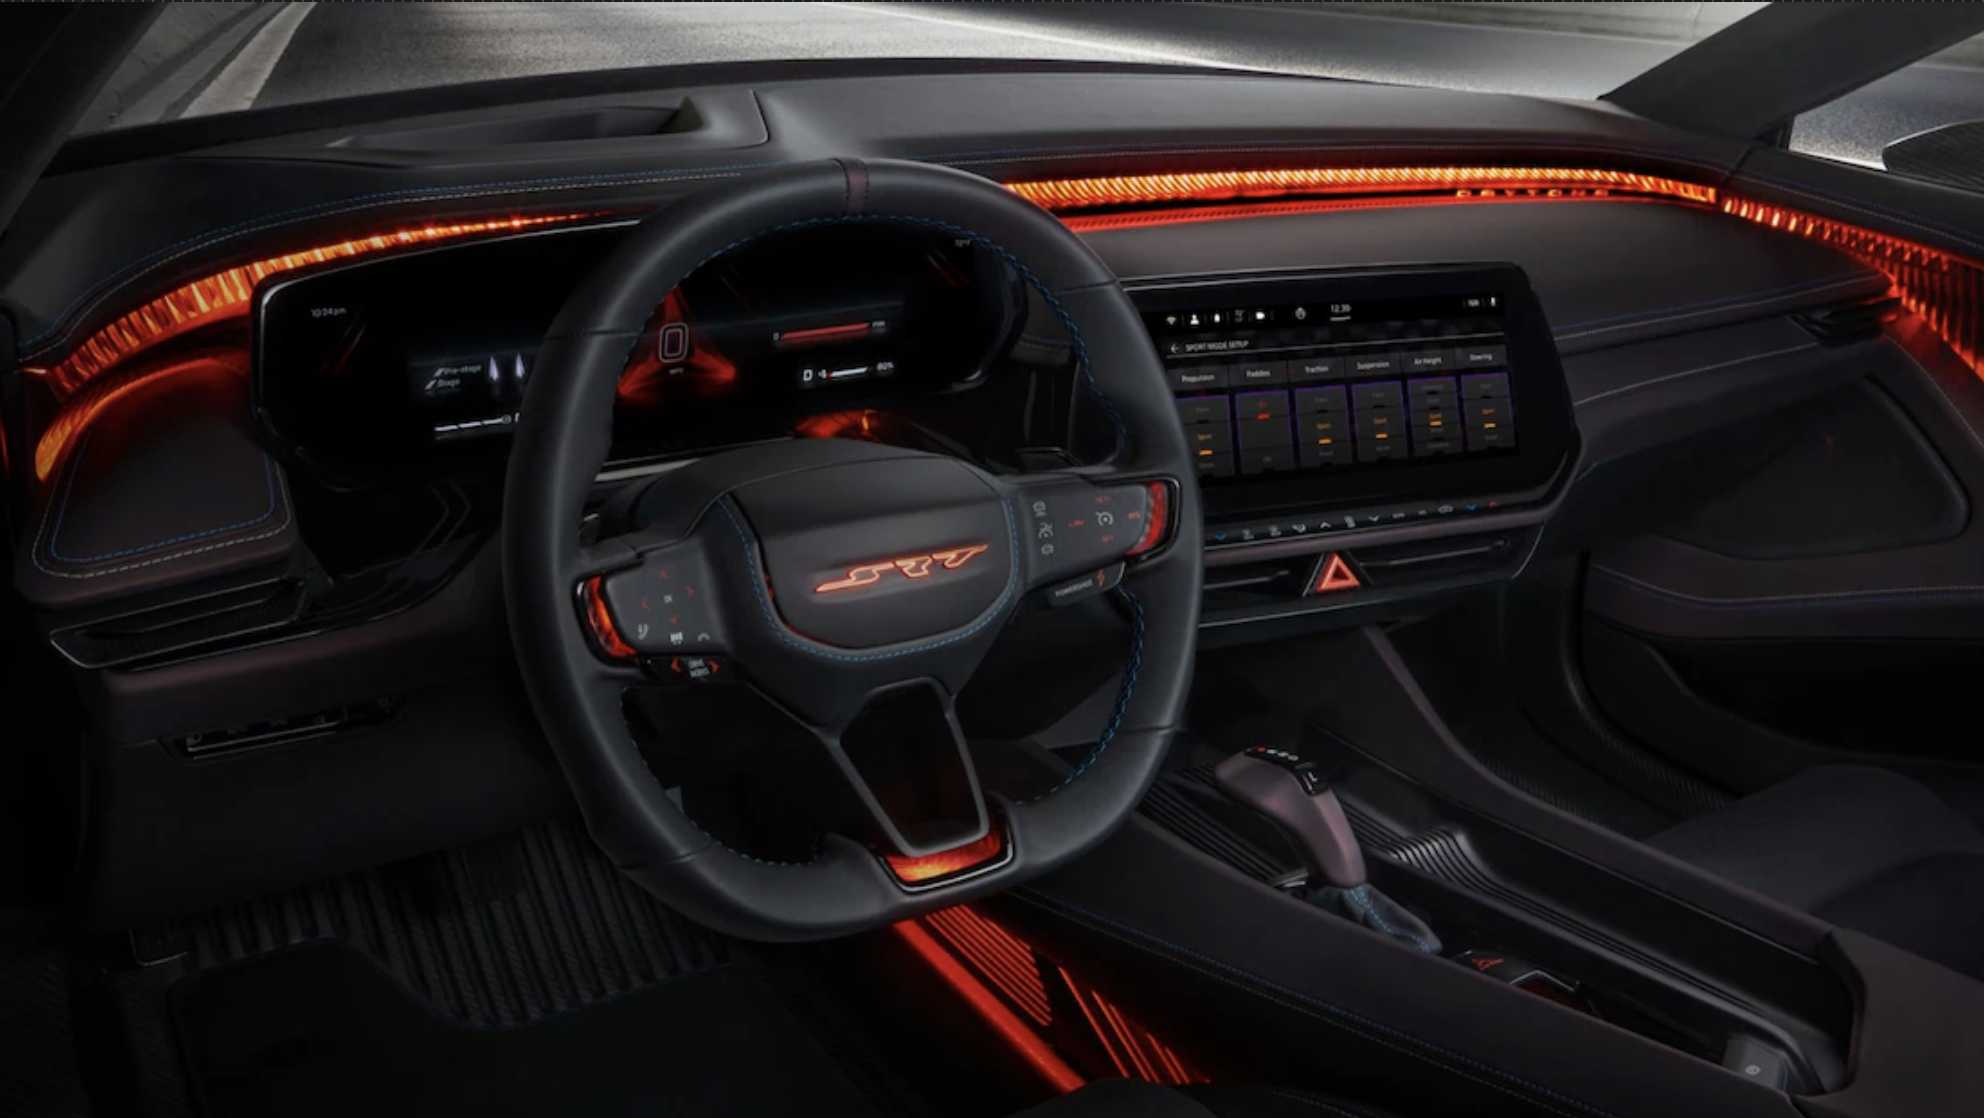 New Dodge Charger Daytona SRT EV Concept is Back to its Original Number of Doors